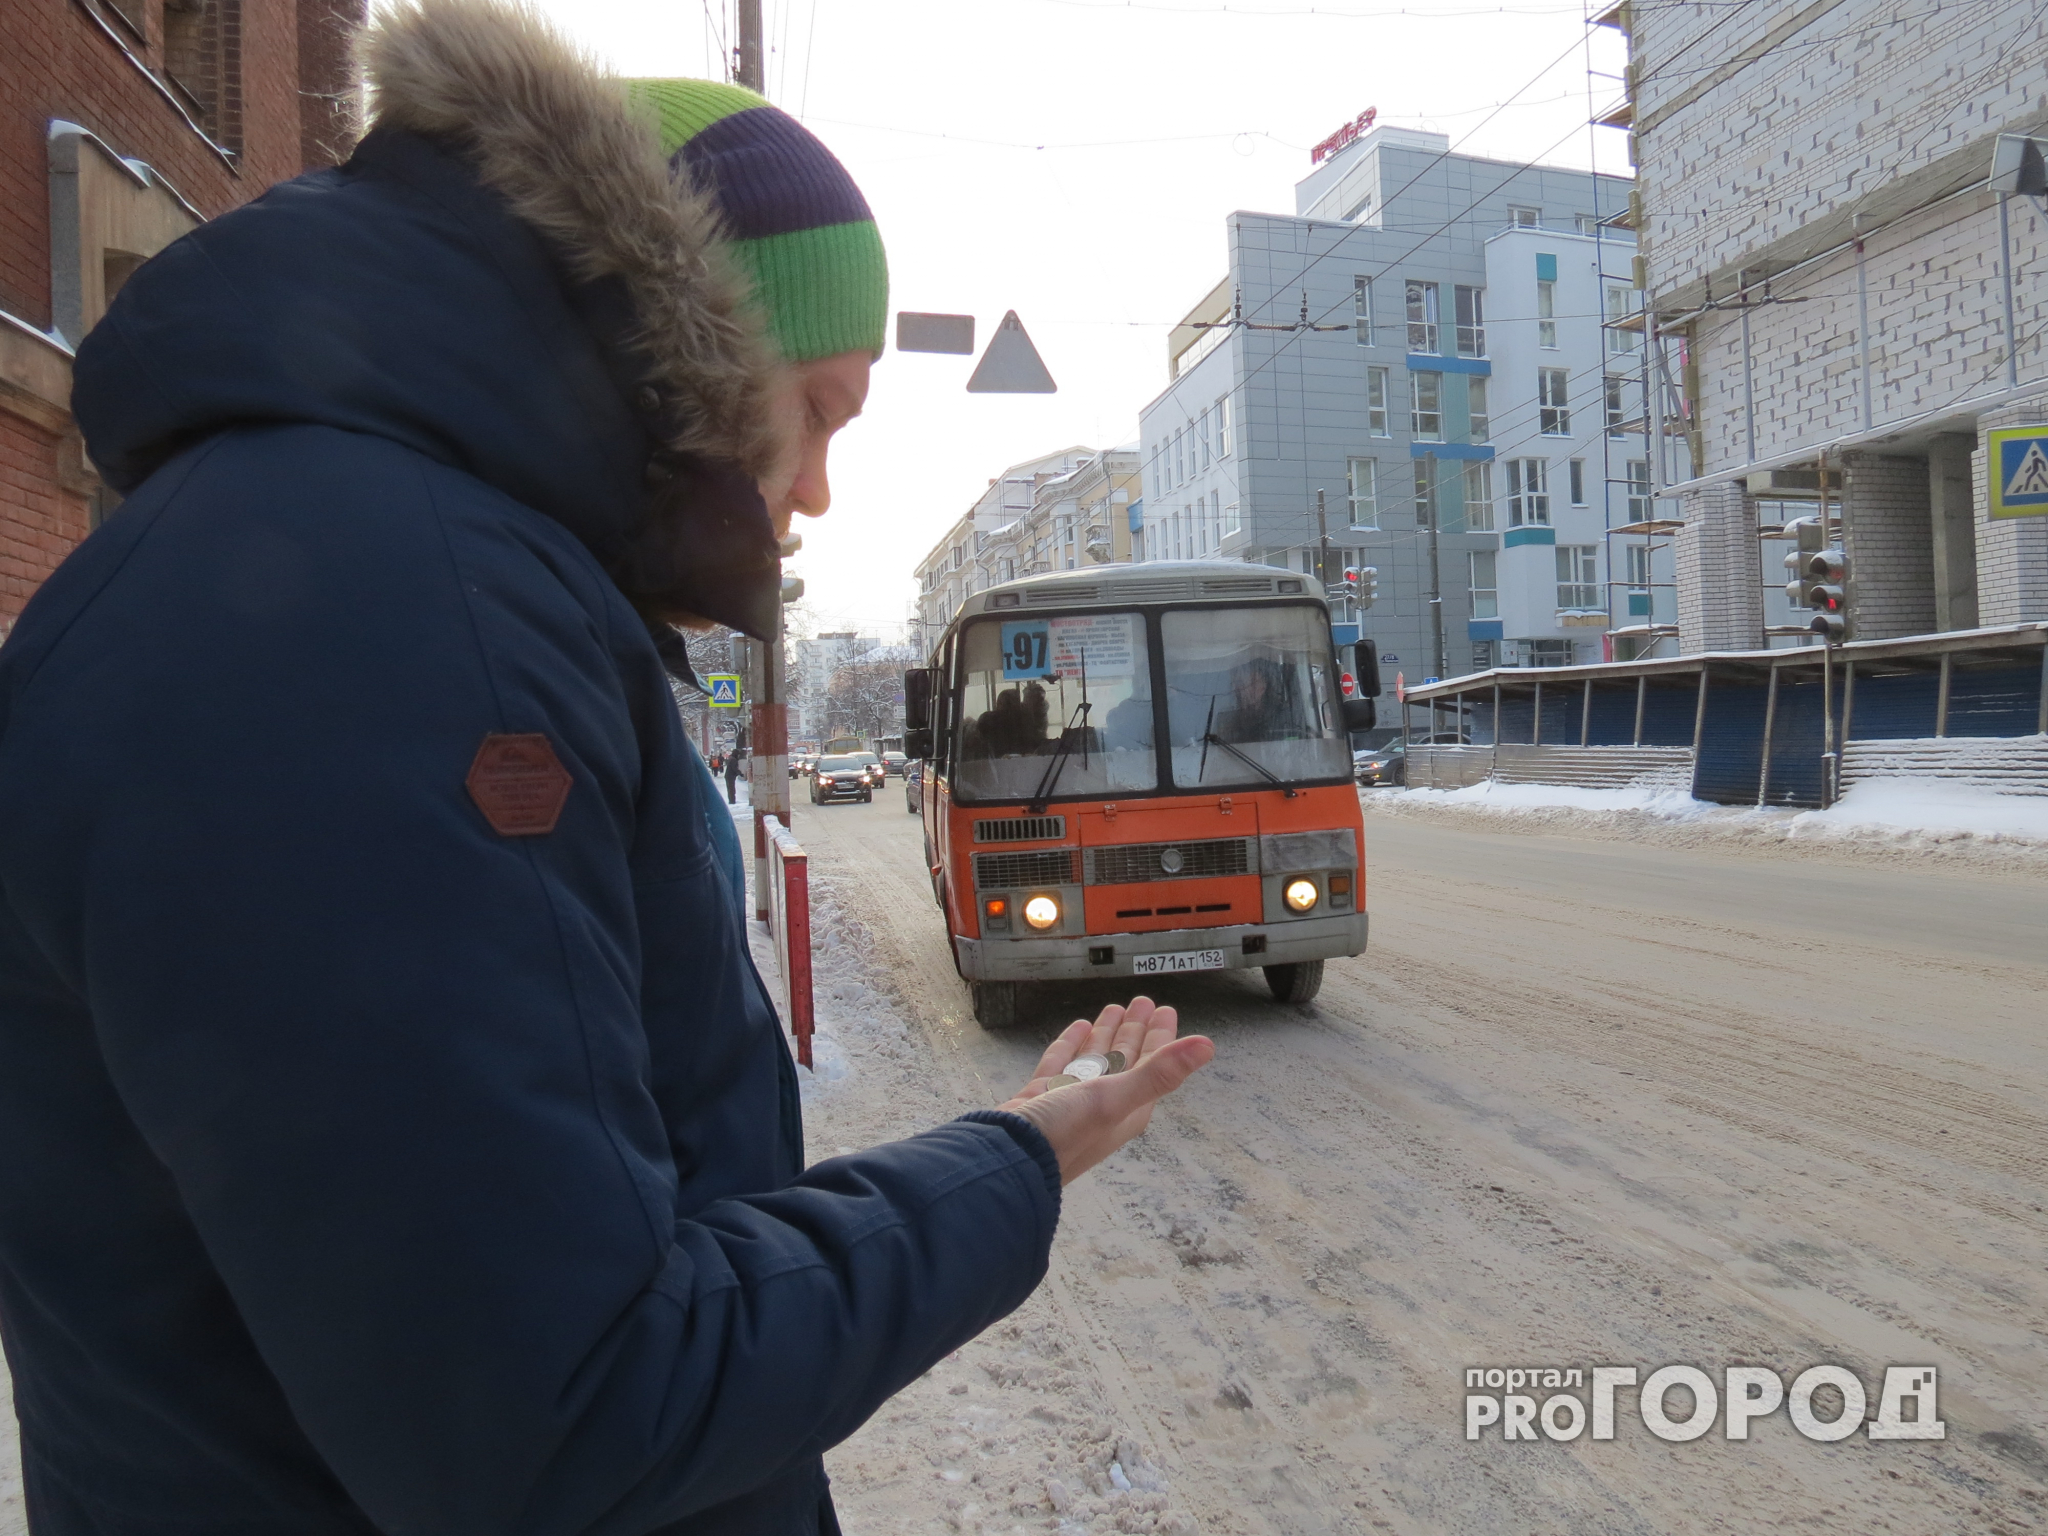 Жители Дзержинска вступились за активиста, ведущего одиночную борьбу с властями